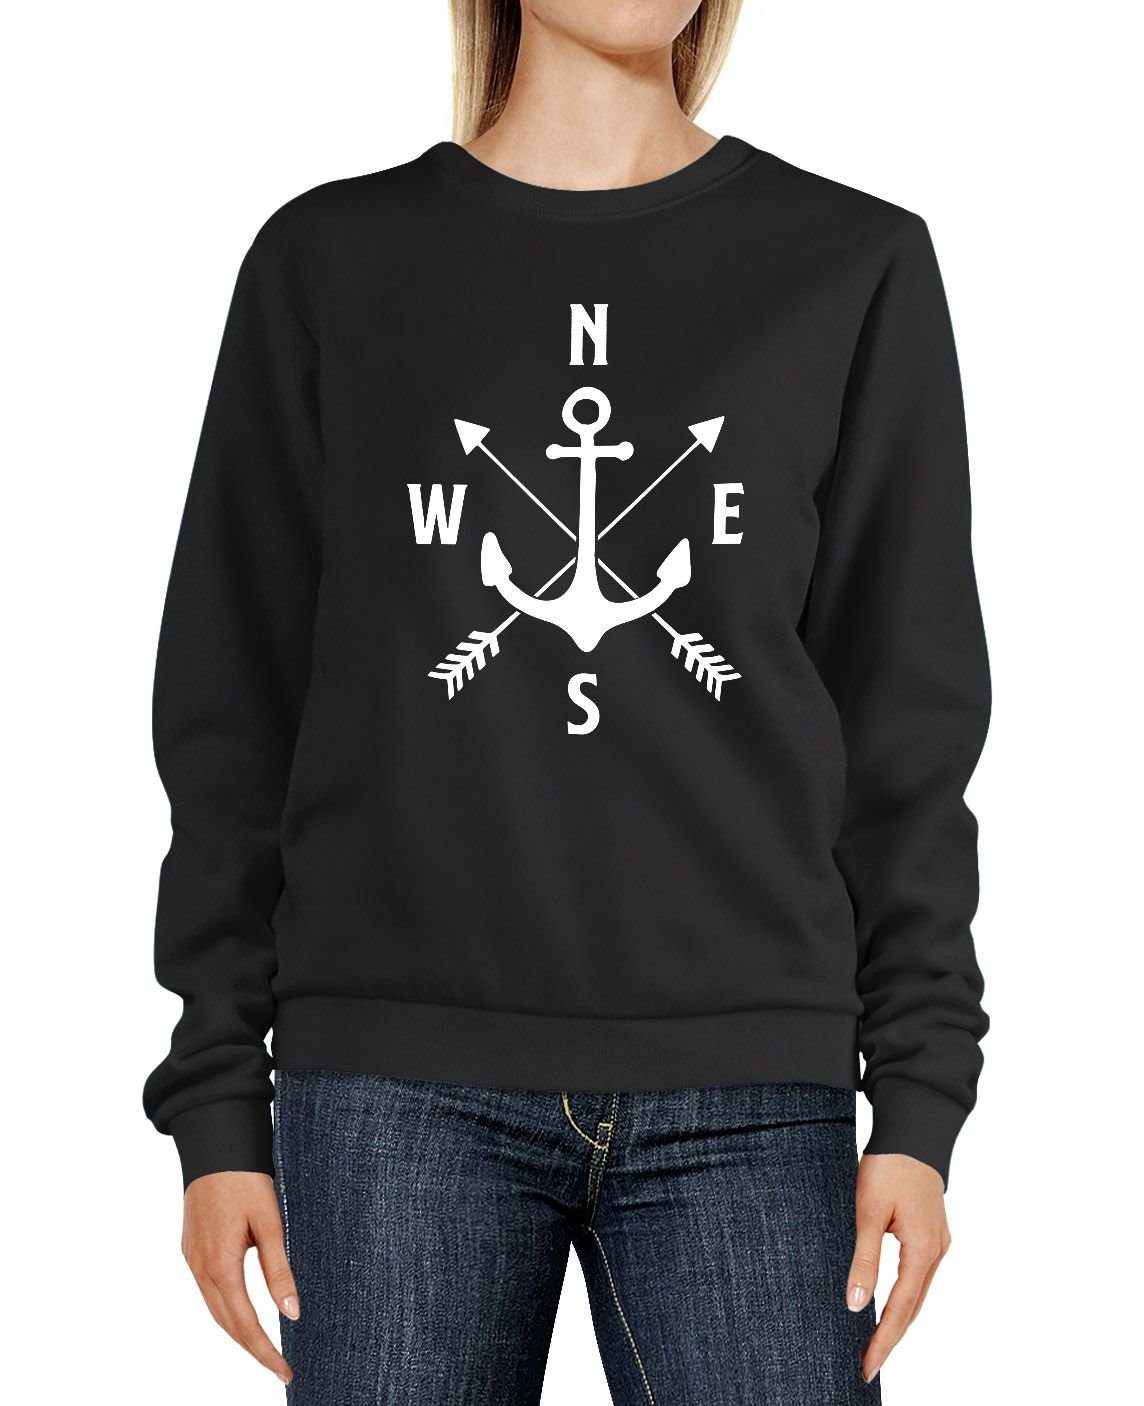 MoonWorks Sweatshirt Sweatshirt Damen Aufdruck Motiv Anker Kompass Pfeile Rundhals-Pullover Pulli Sweater Moonworks® schwarz